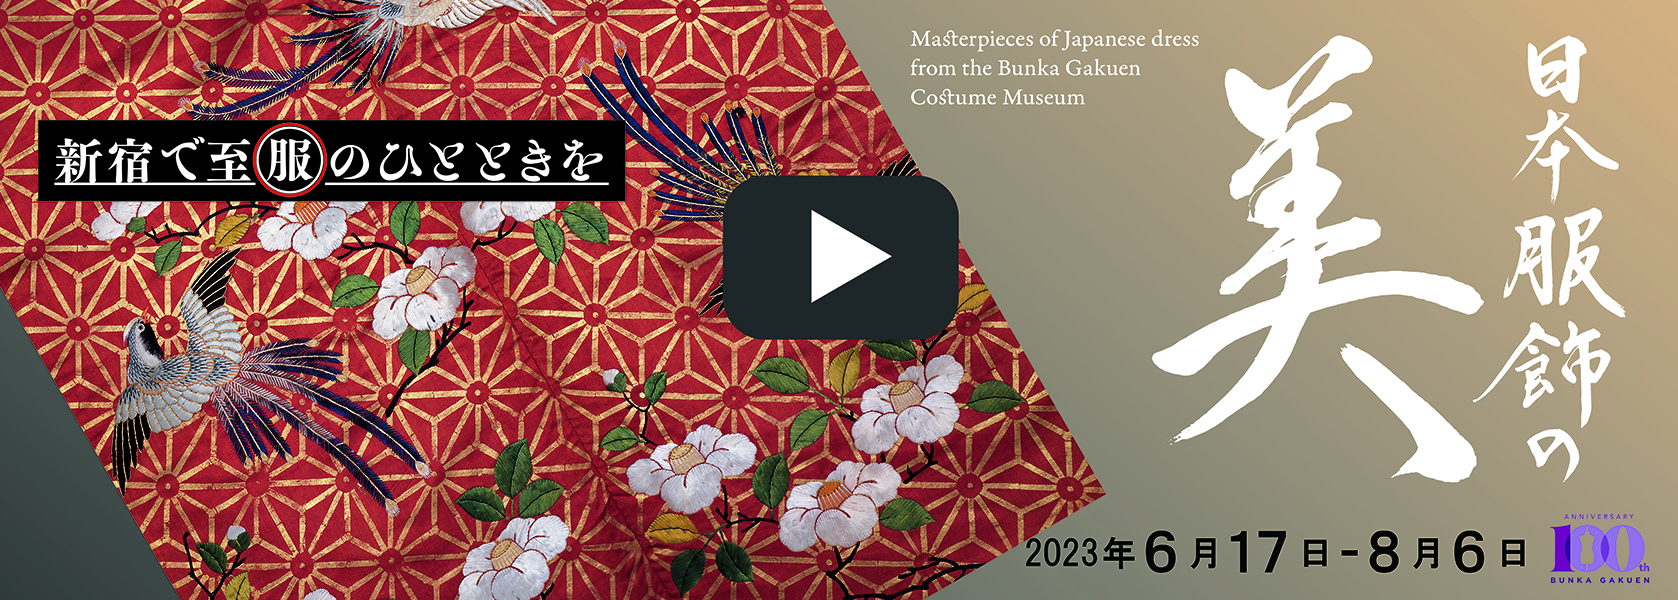 日本服飾の美予告動画